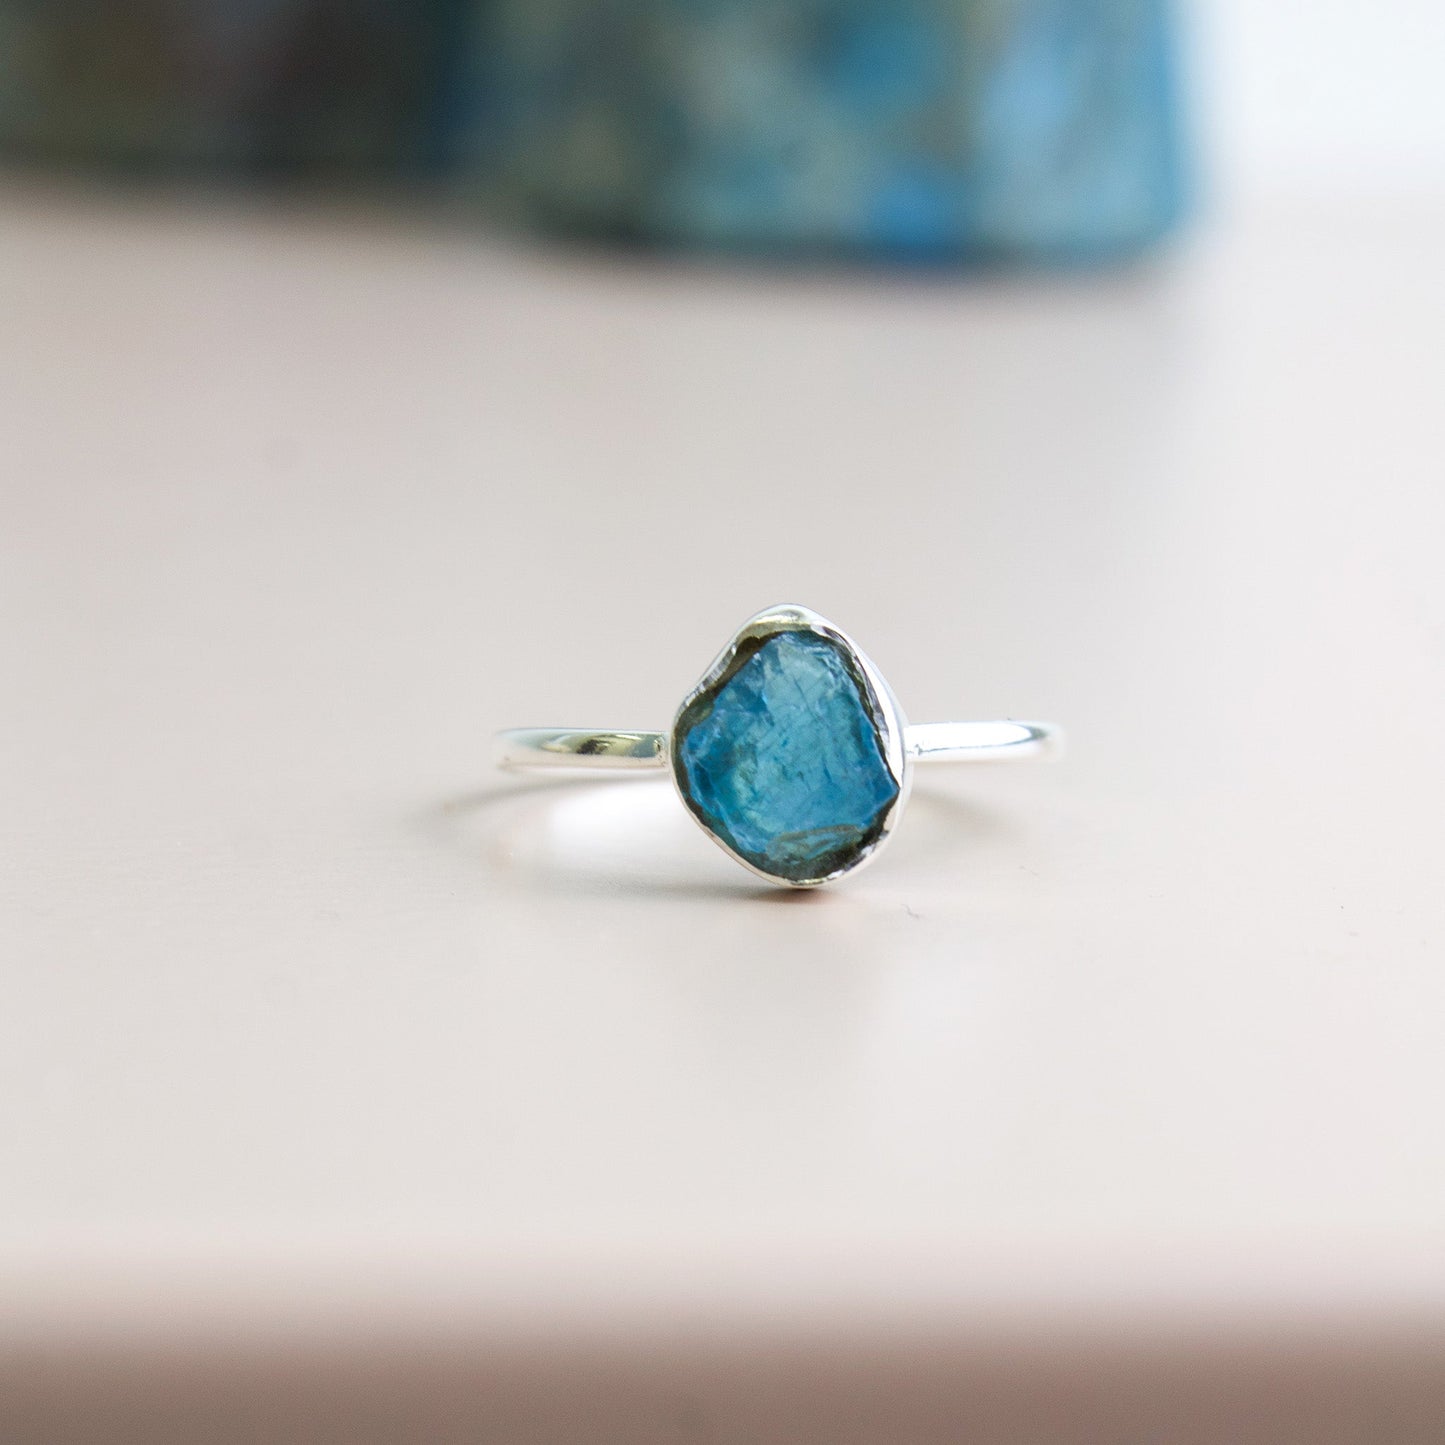 Blue Apatite Ring - Unique Ring #1 | Love + Lark - Muse + Moonstone